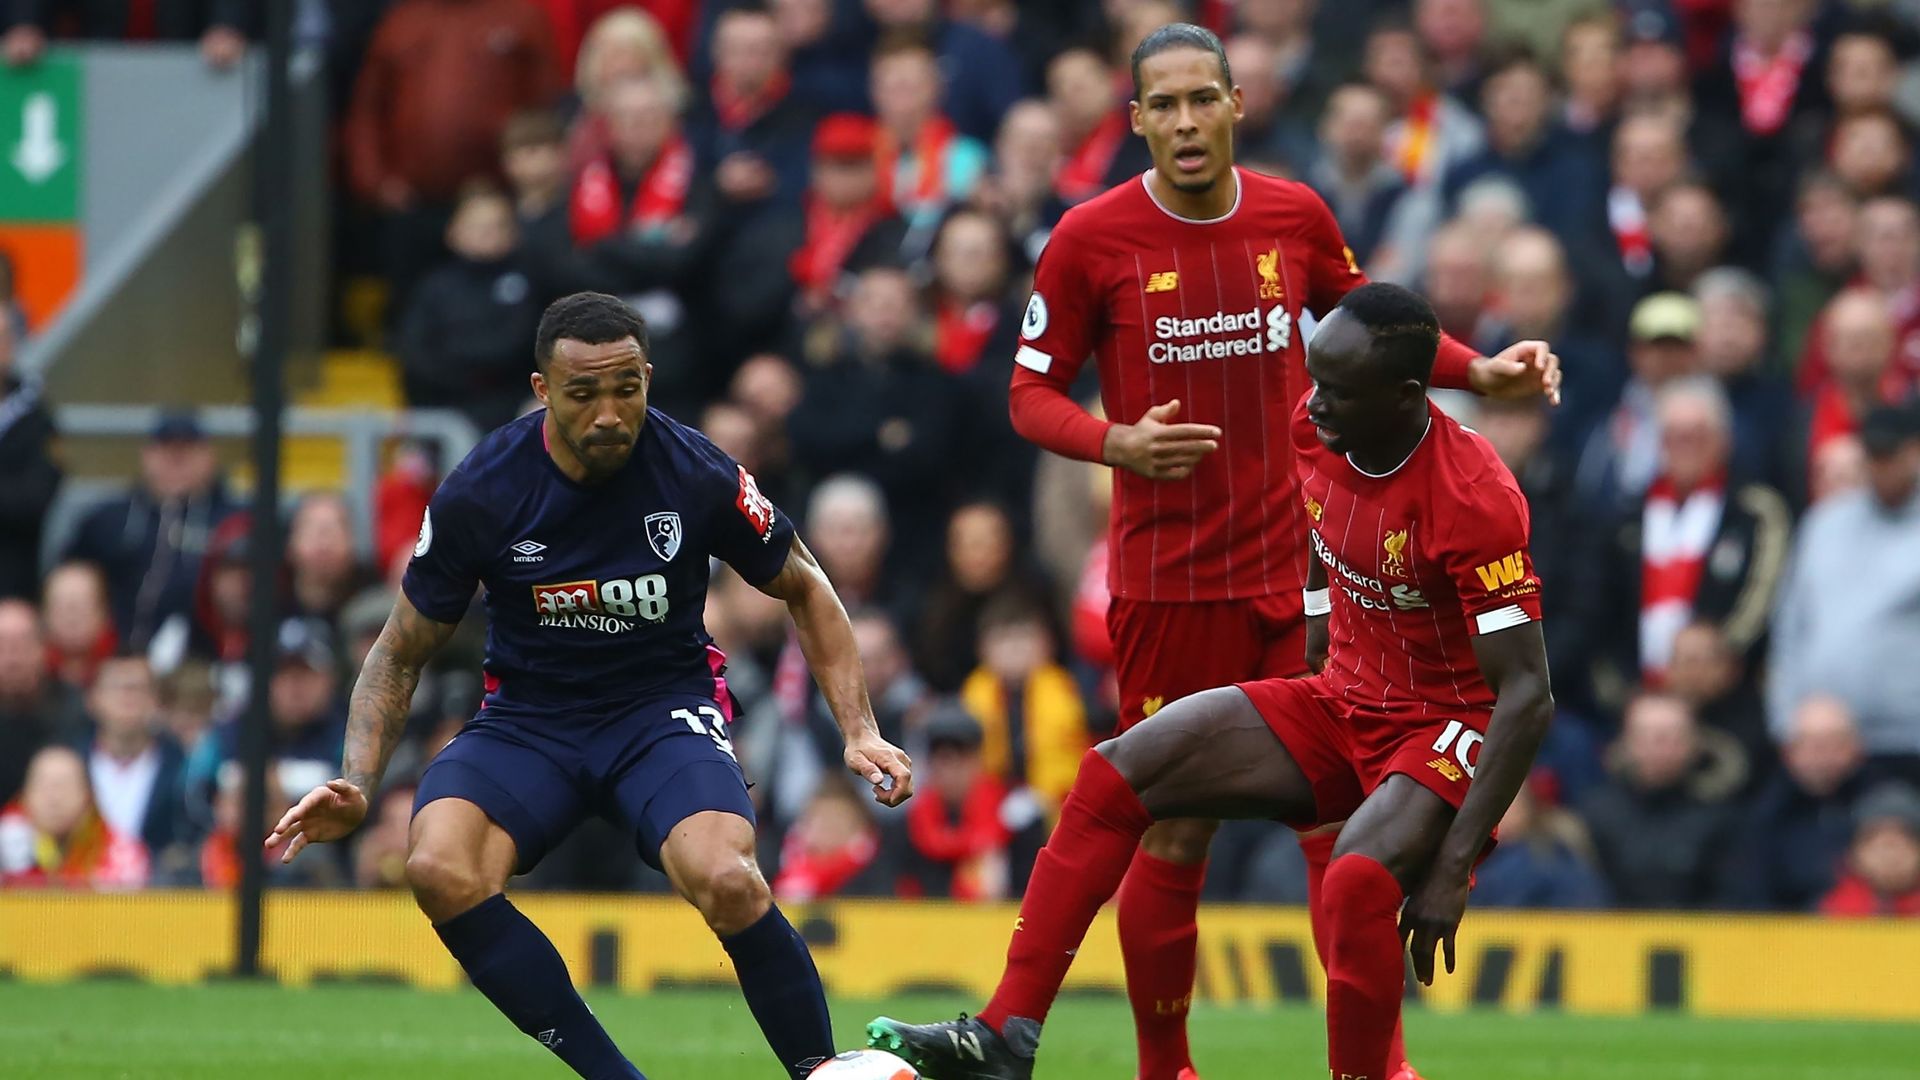 Liverpool s'est imposé 2-1 face à Bournemouth samedi à Anfield en ouverture de la 29e journée de Premier League. Salah et Mané se sont chargés d'inscrire les buts des Reds.